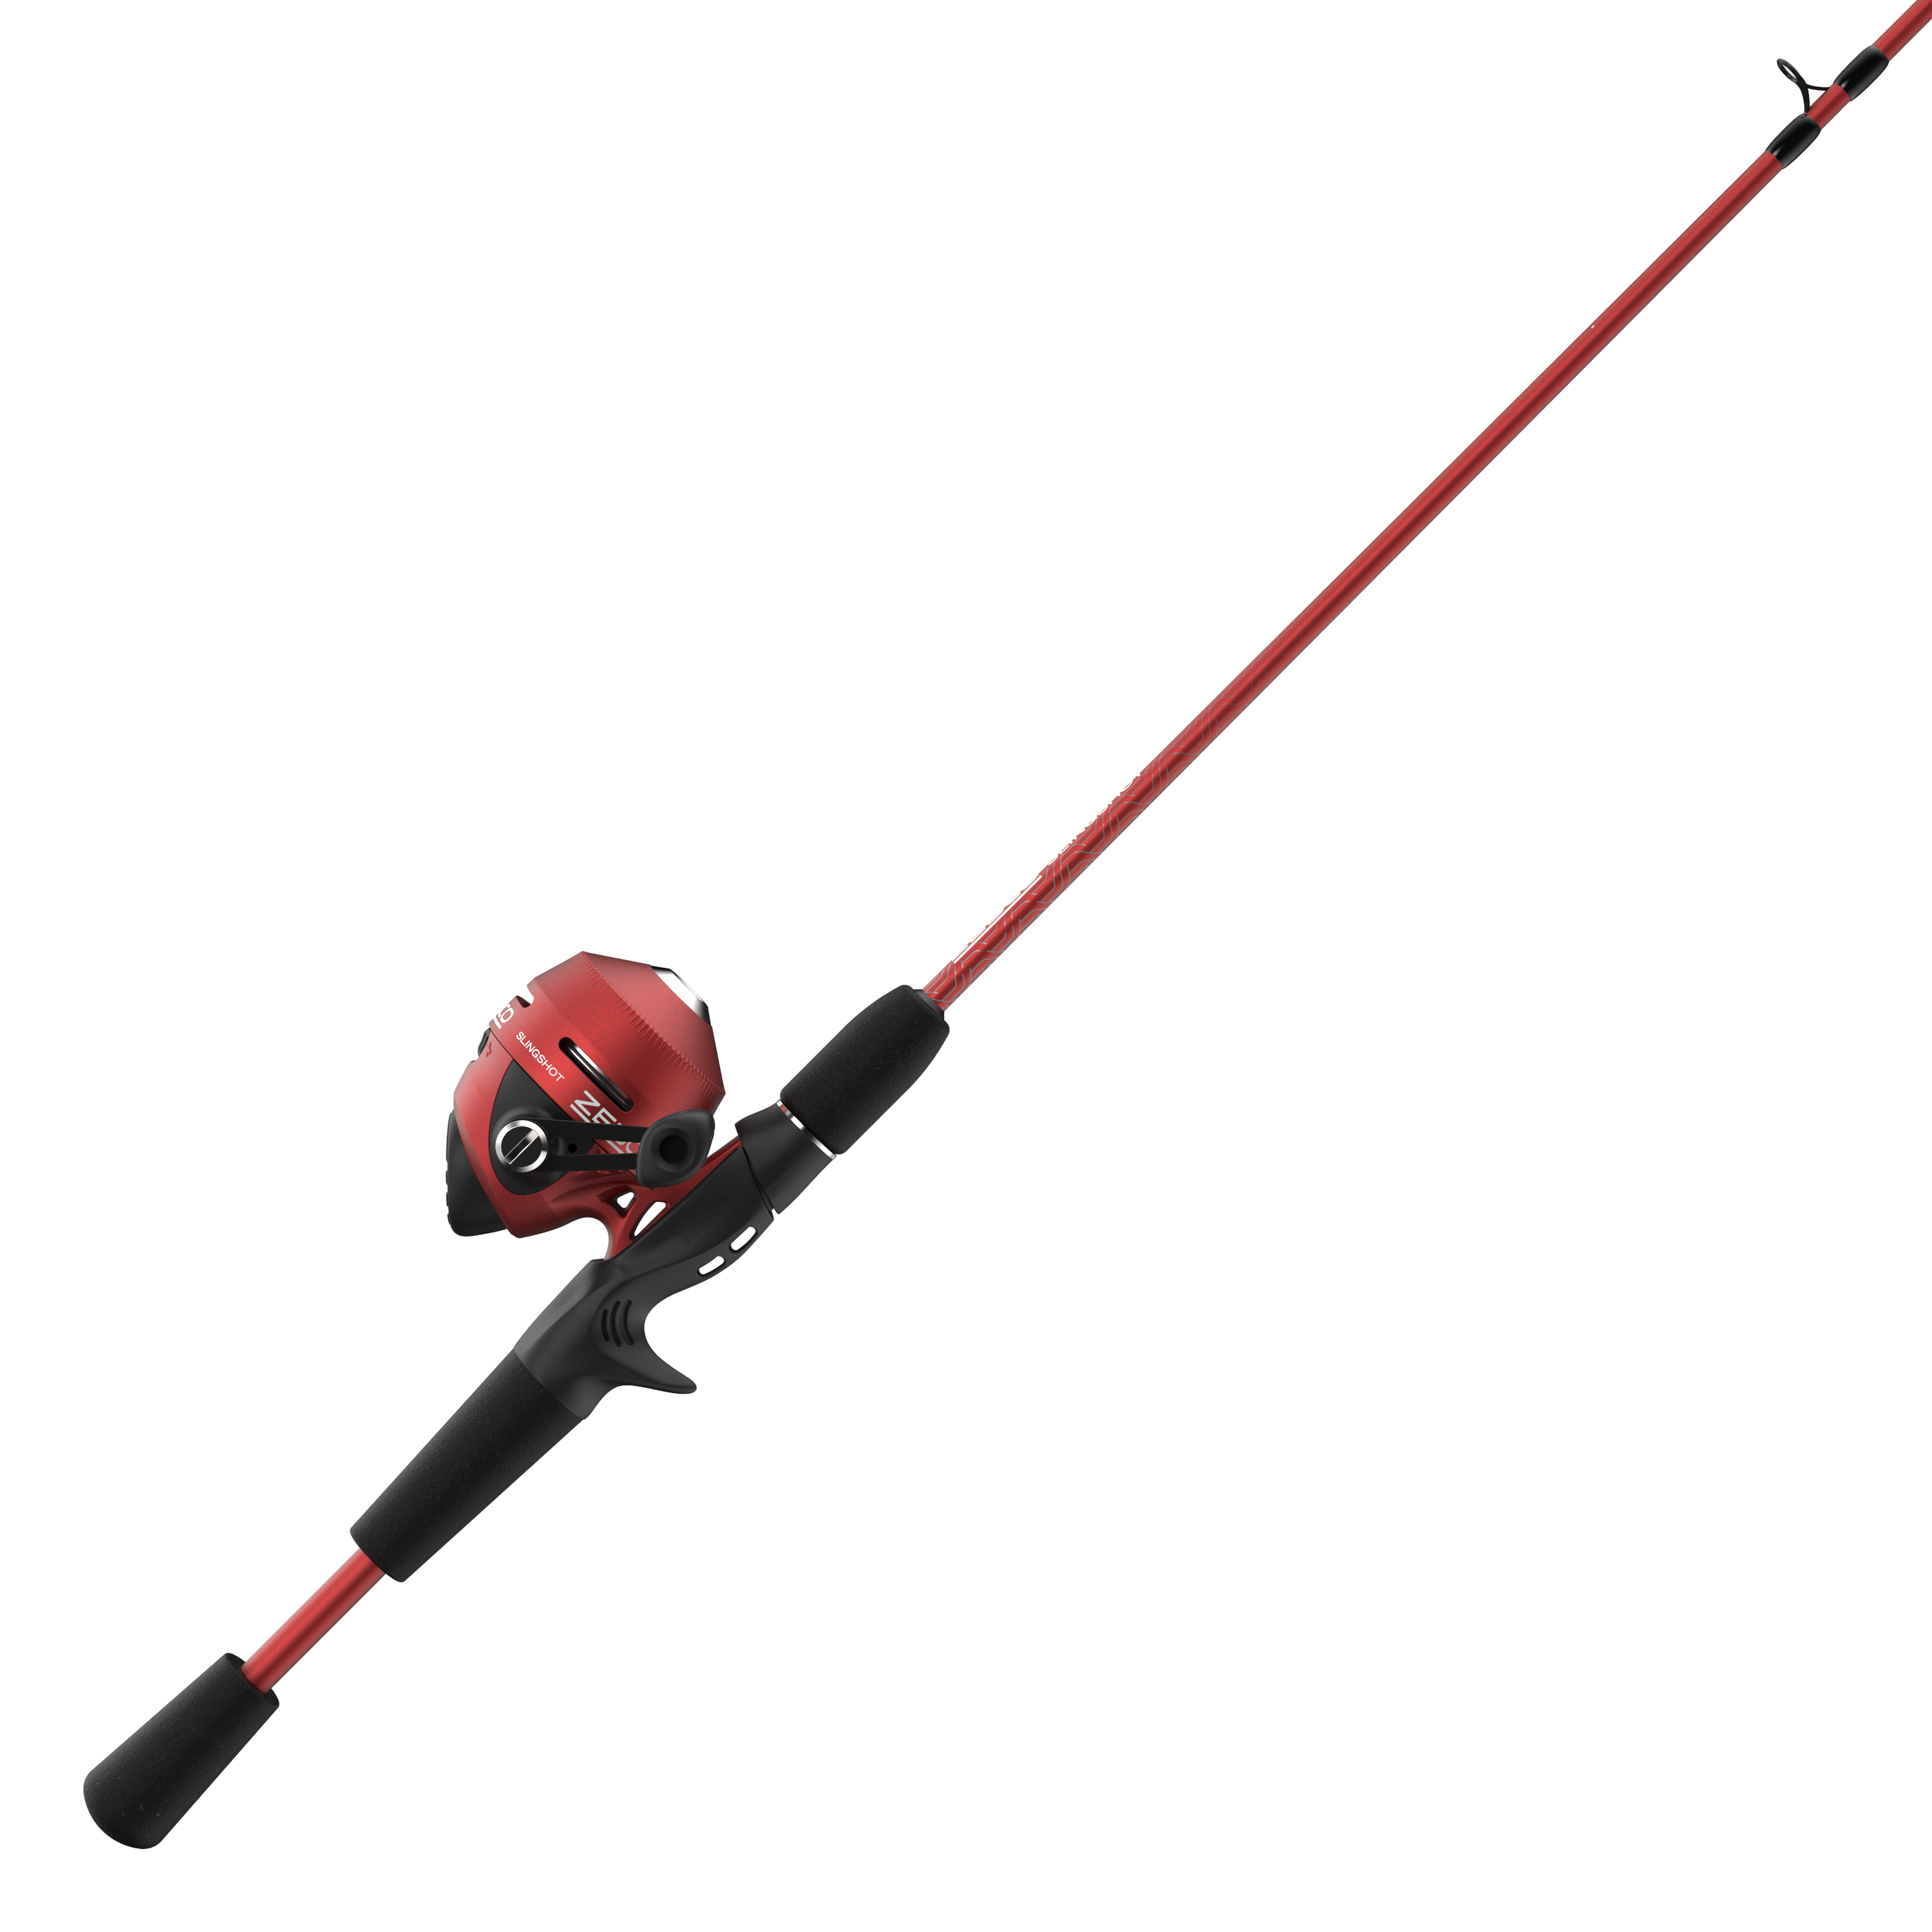 Buy Pink Fishing Rod Reel online